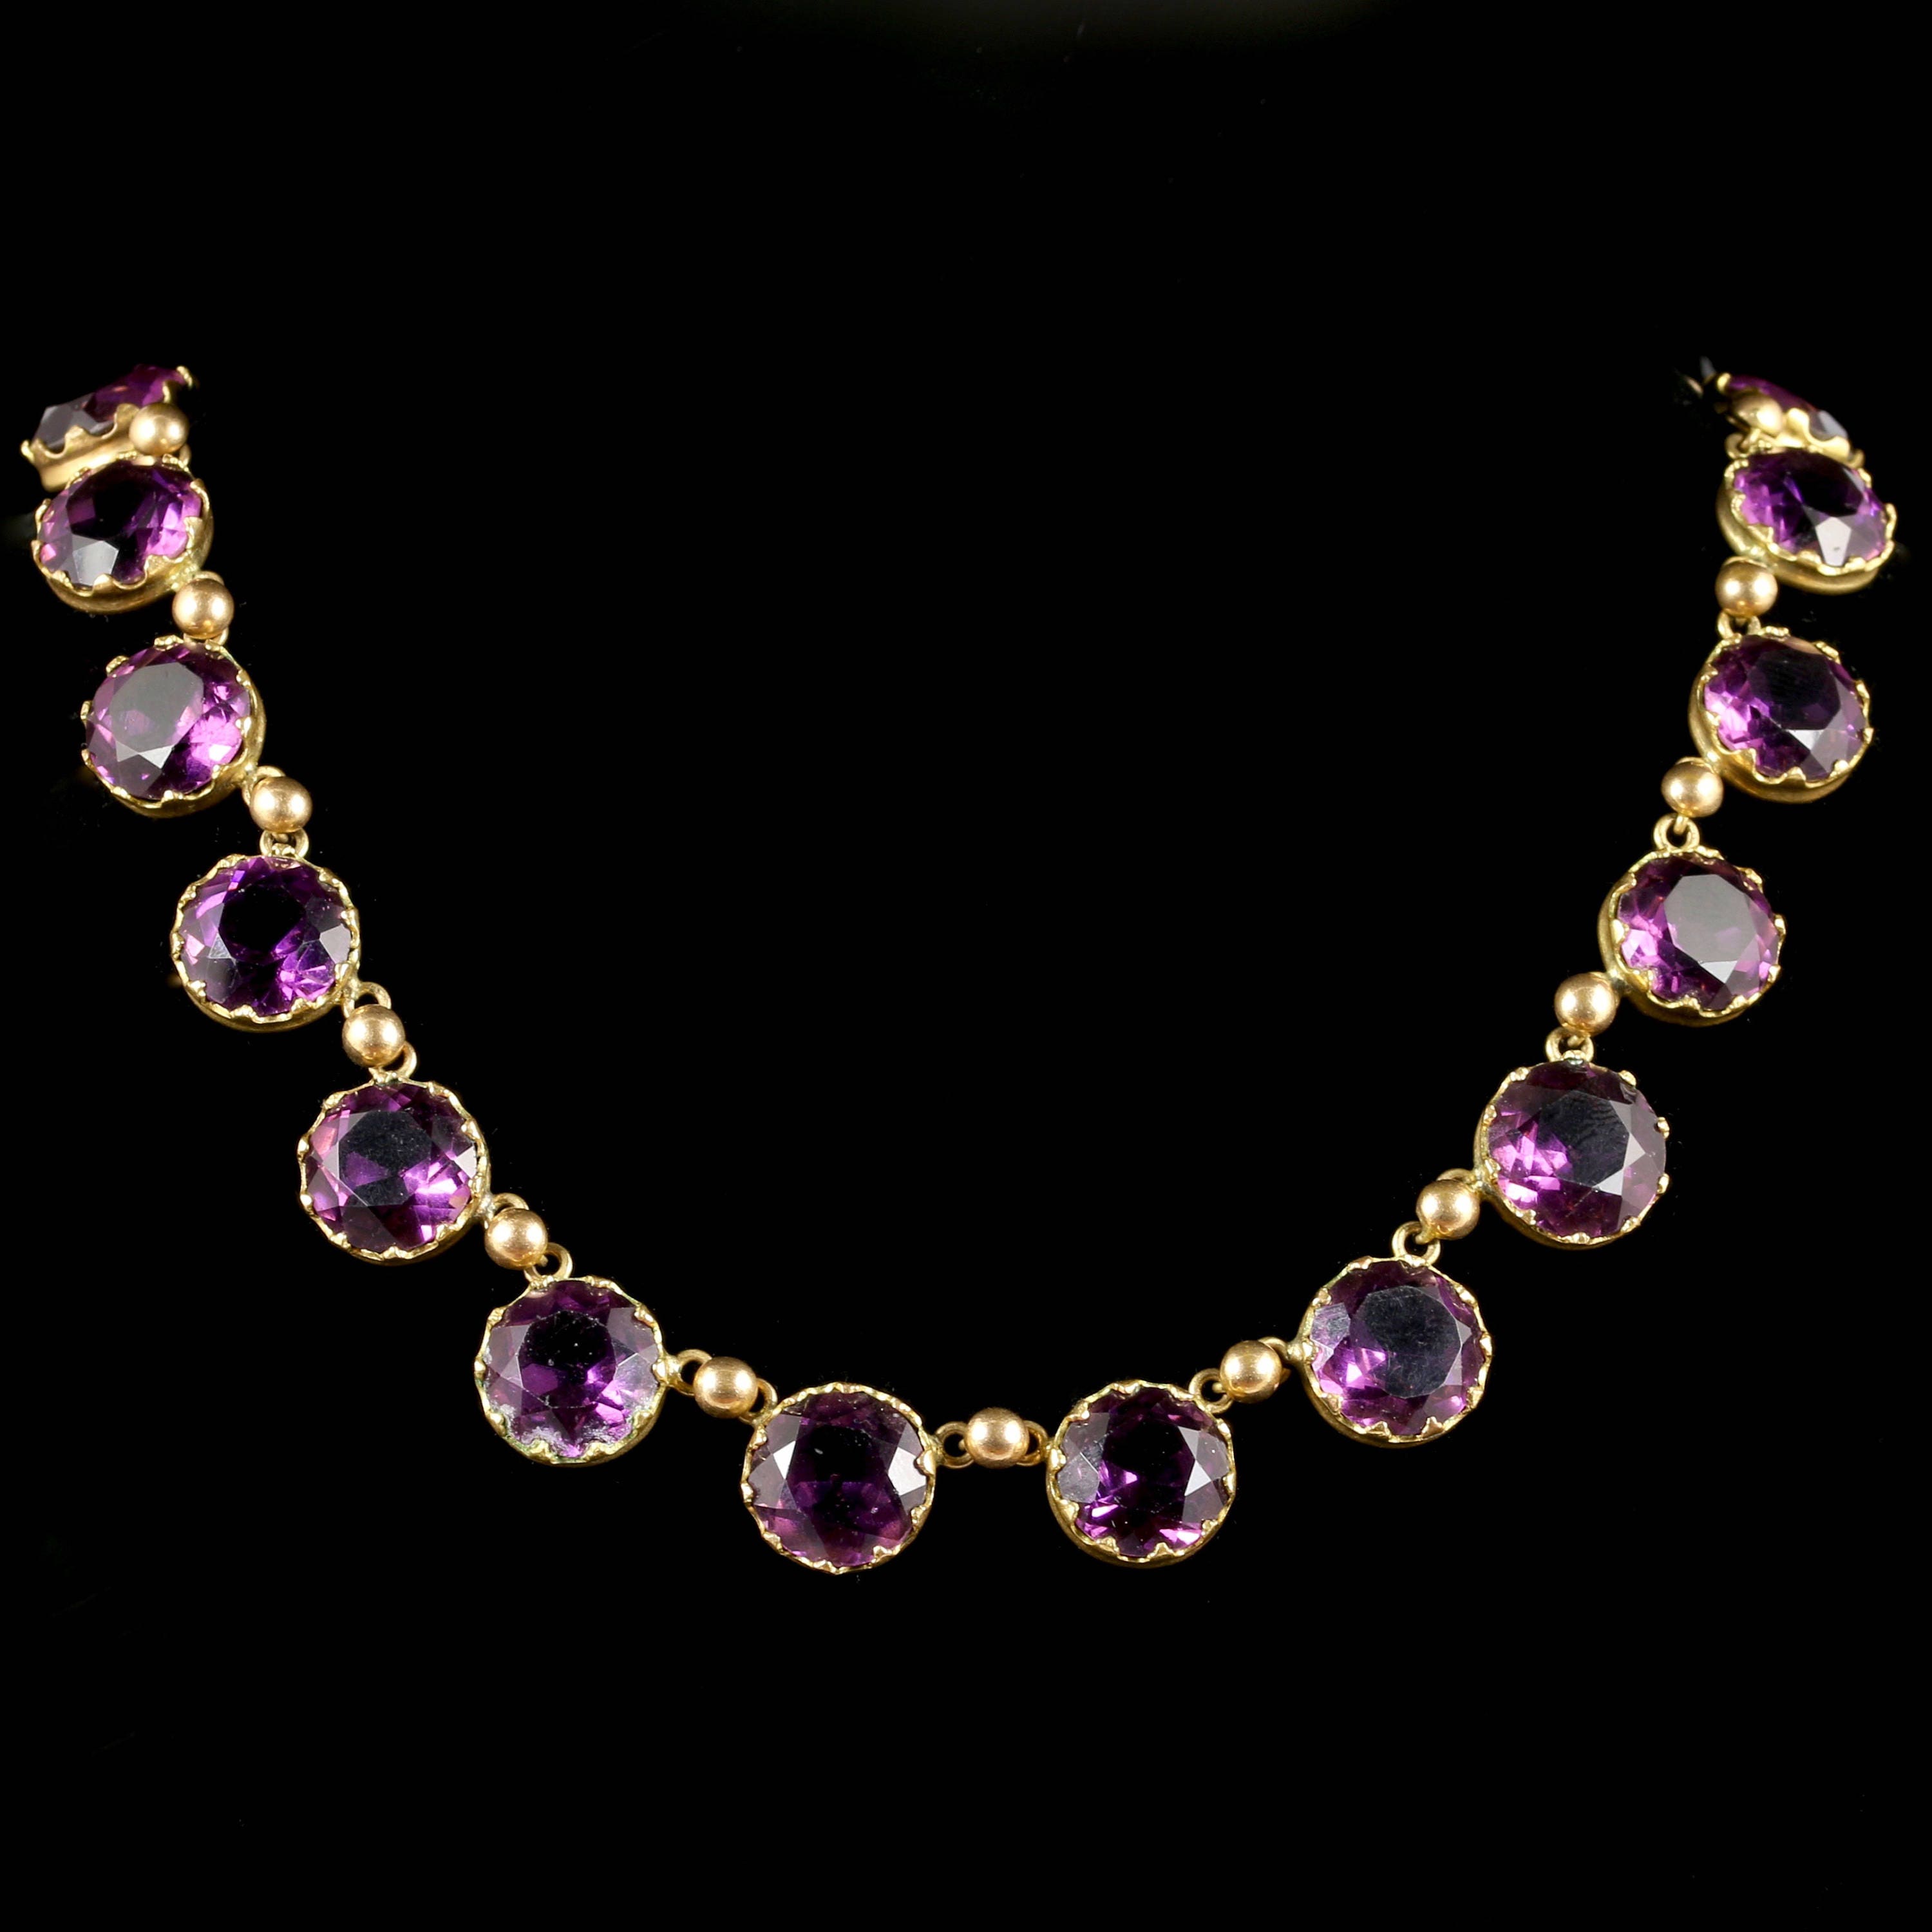 Antique Victorian Purple Paste Necklace Circa 1860 | Etsy